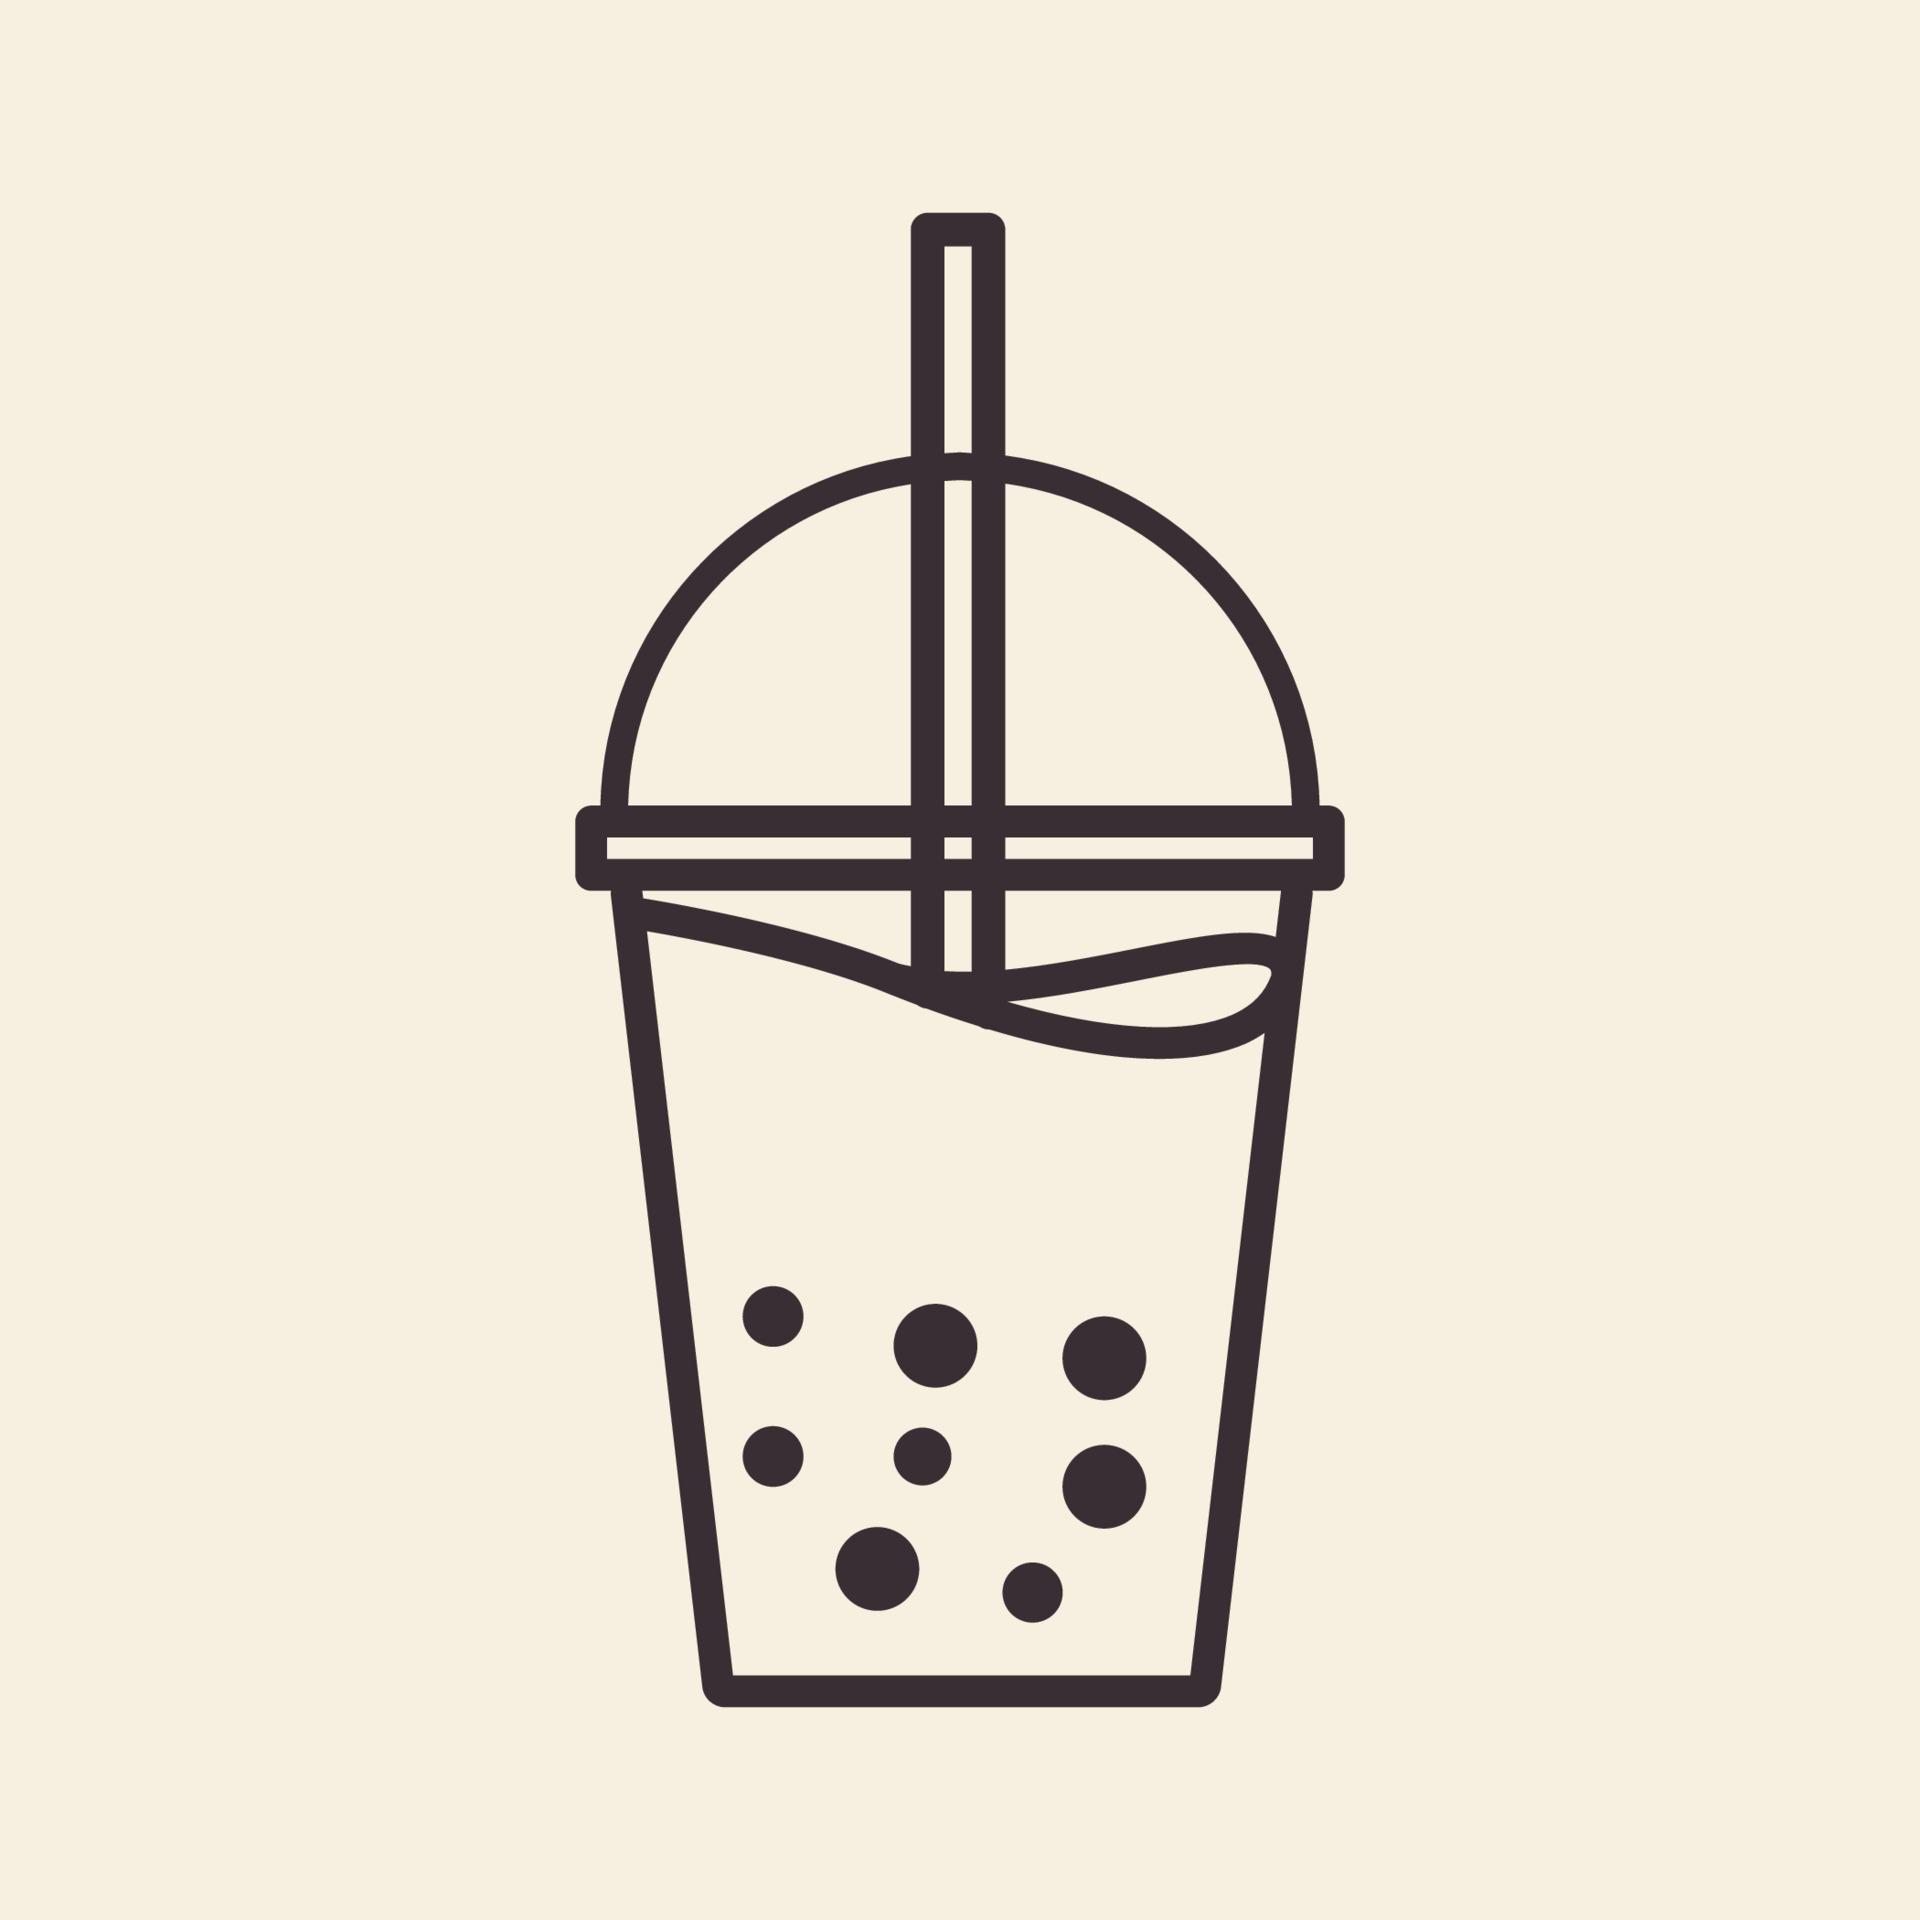 vidrio bebida moderna líneas de burbujas logotipo símbolo vector icono diseño gráfico ilustración